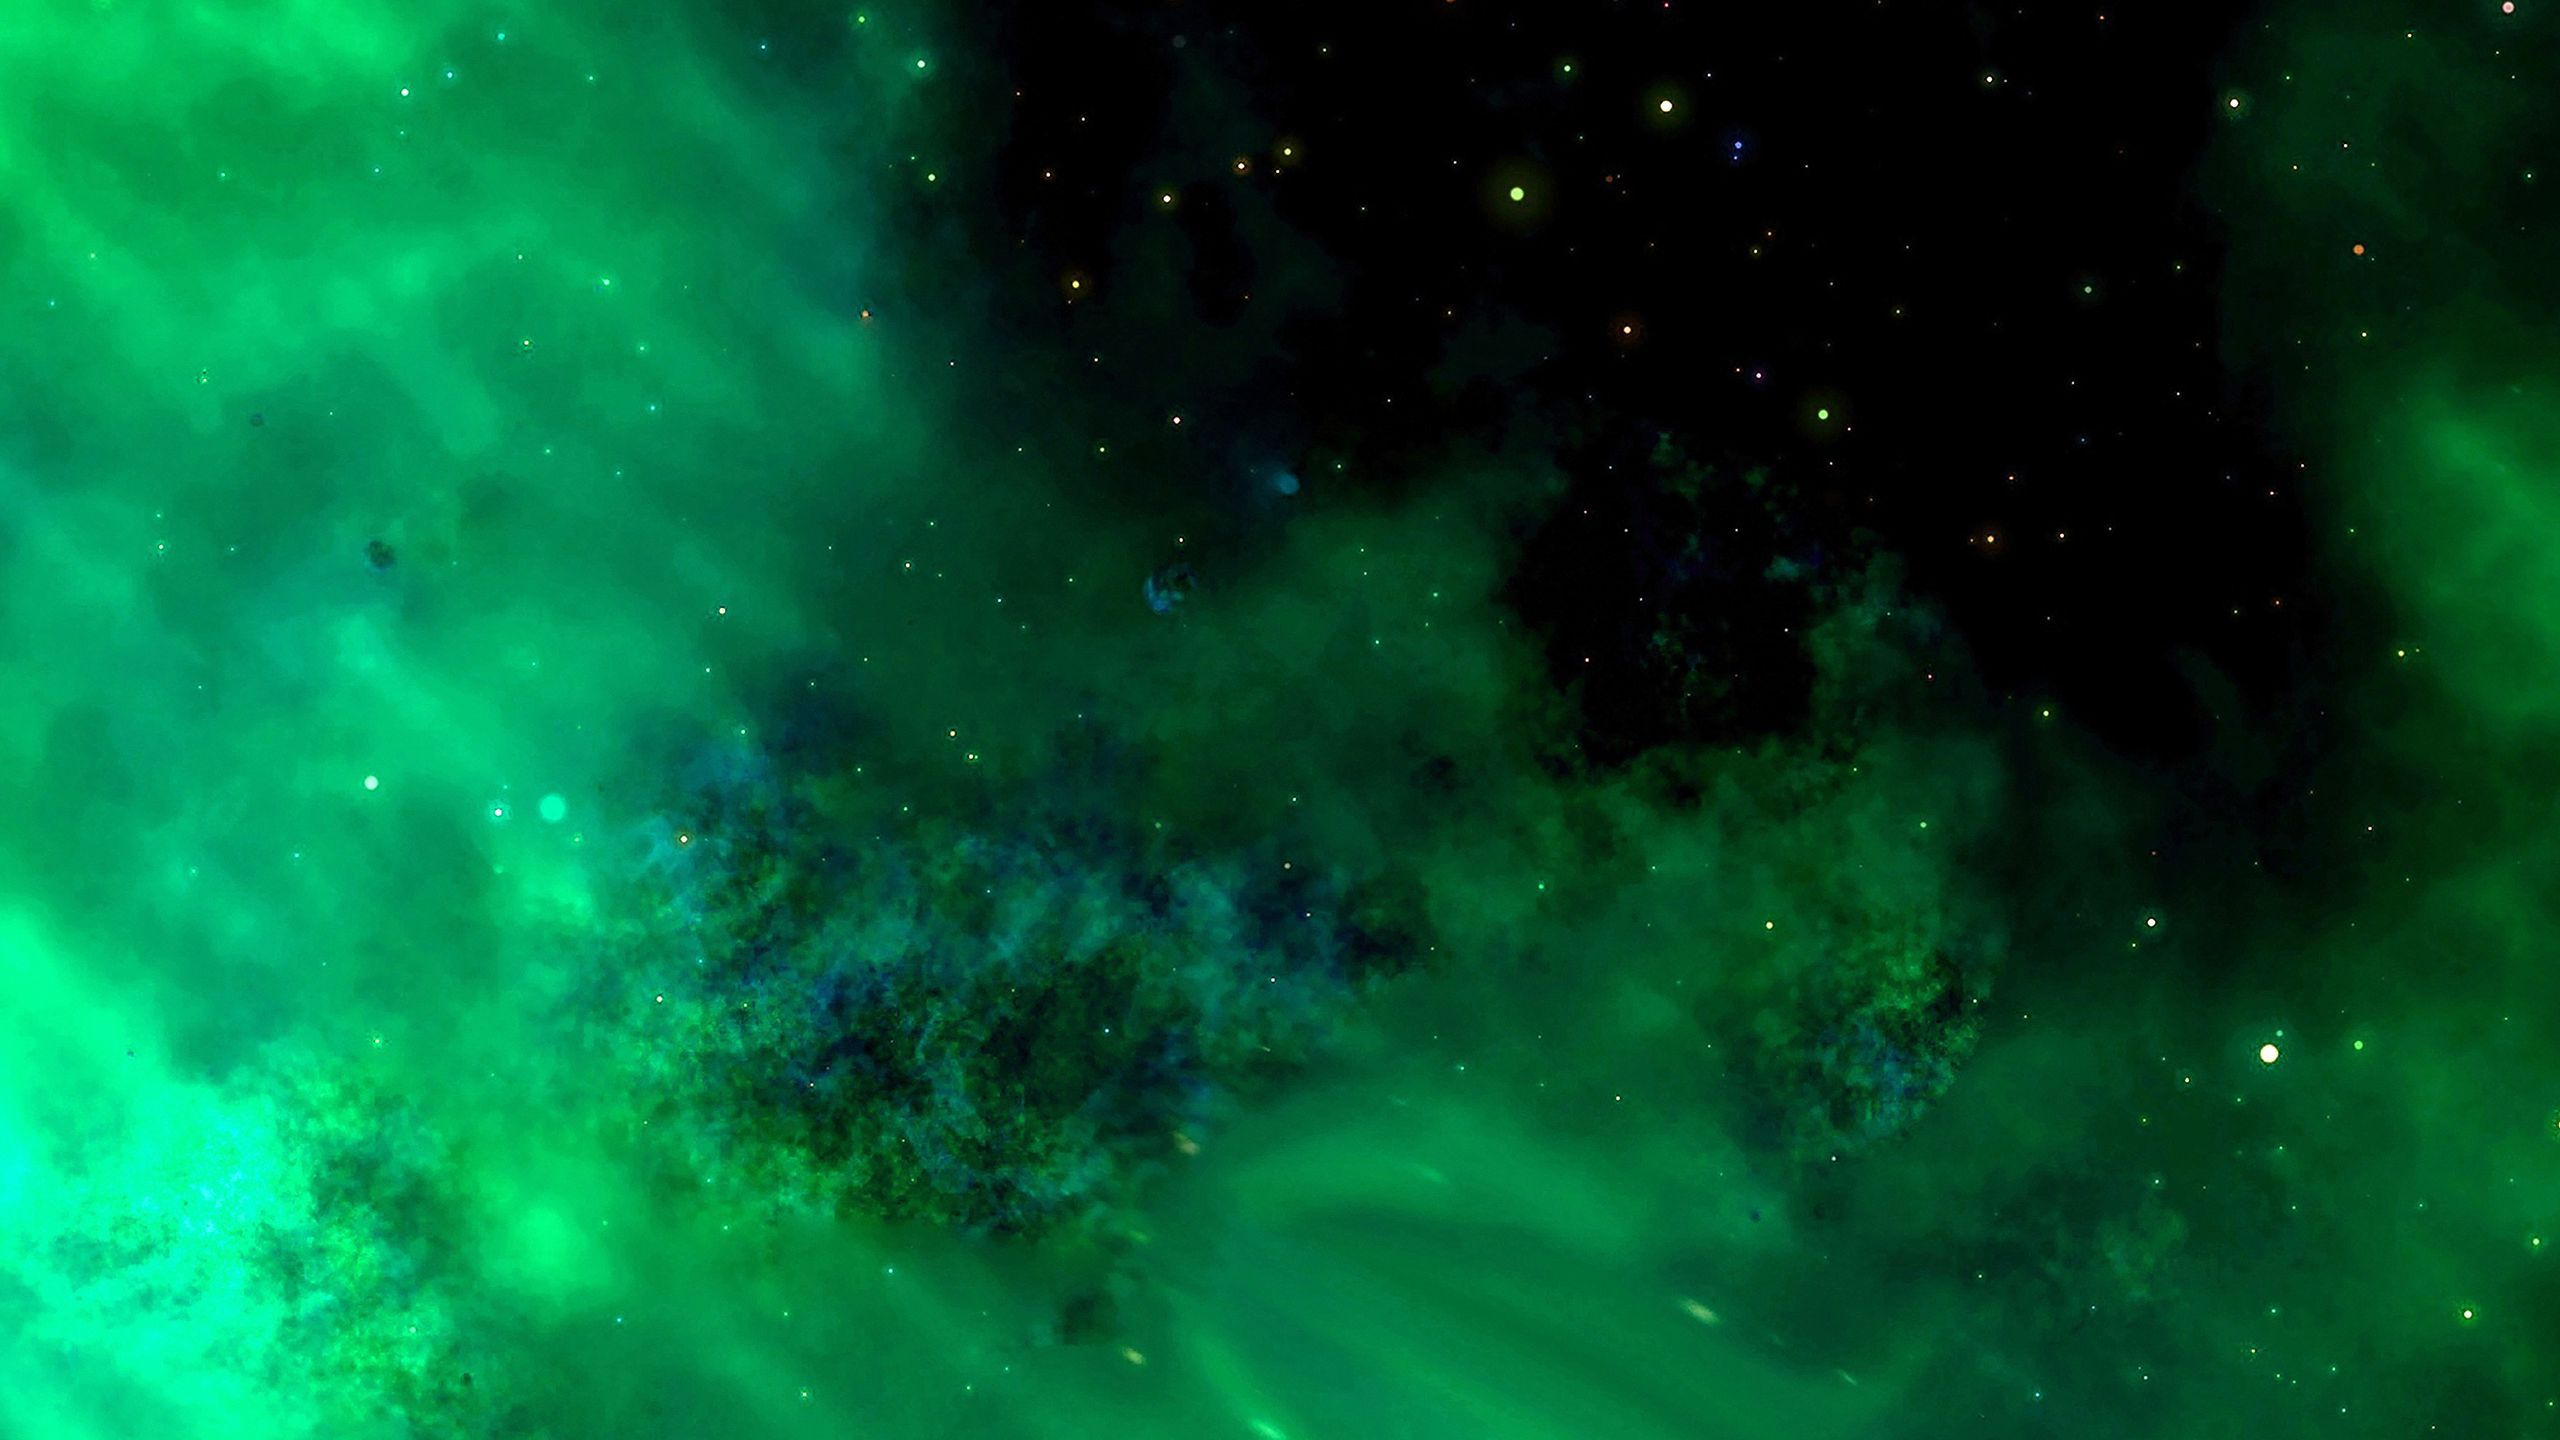 Hãy tận hưởng vẻ đẹp thần tiên của vũ trụ xanh lá với những bức hình nền Cosmos tuyệt đẹp. Bạn sẽ được đắm mình vào một không gian xanh mát bao la, tráng lệ, đầy những con đường chưa được khám phá giữa những ngôi sao và ngân hà.